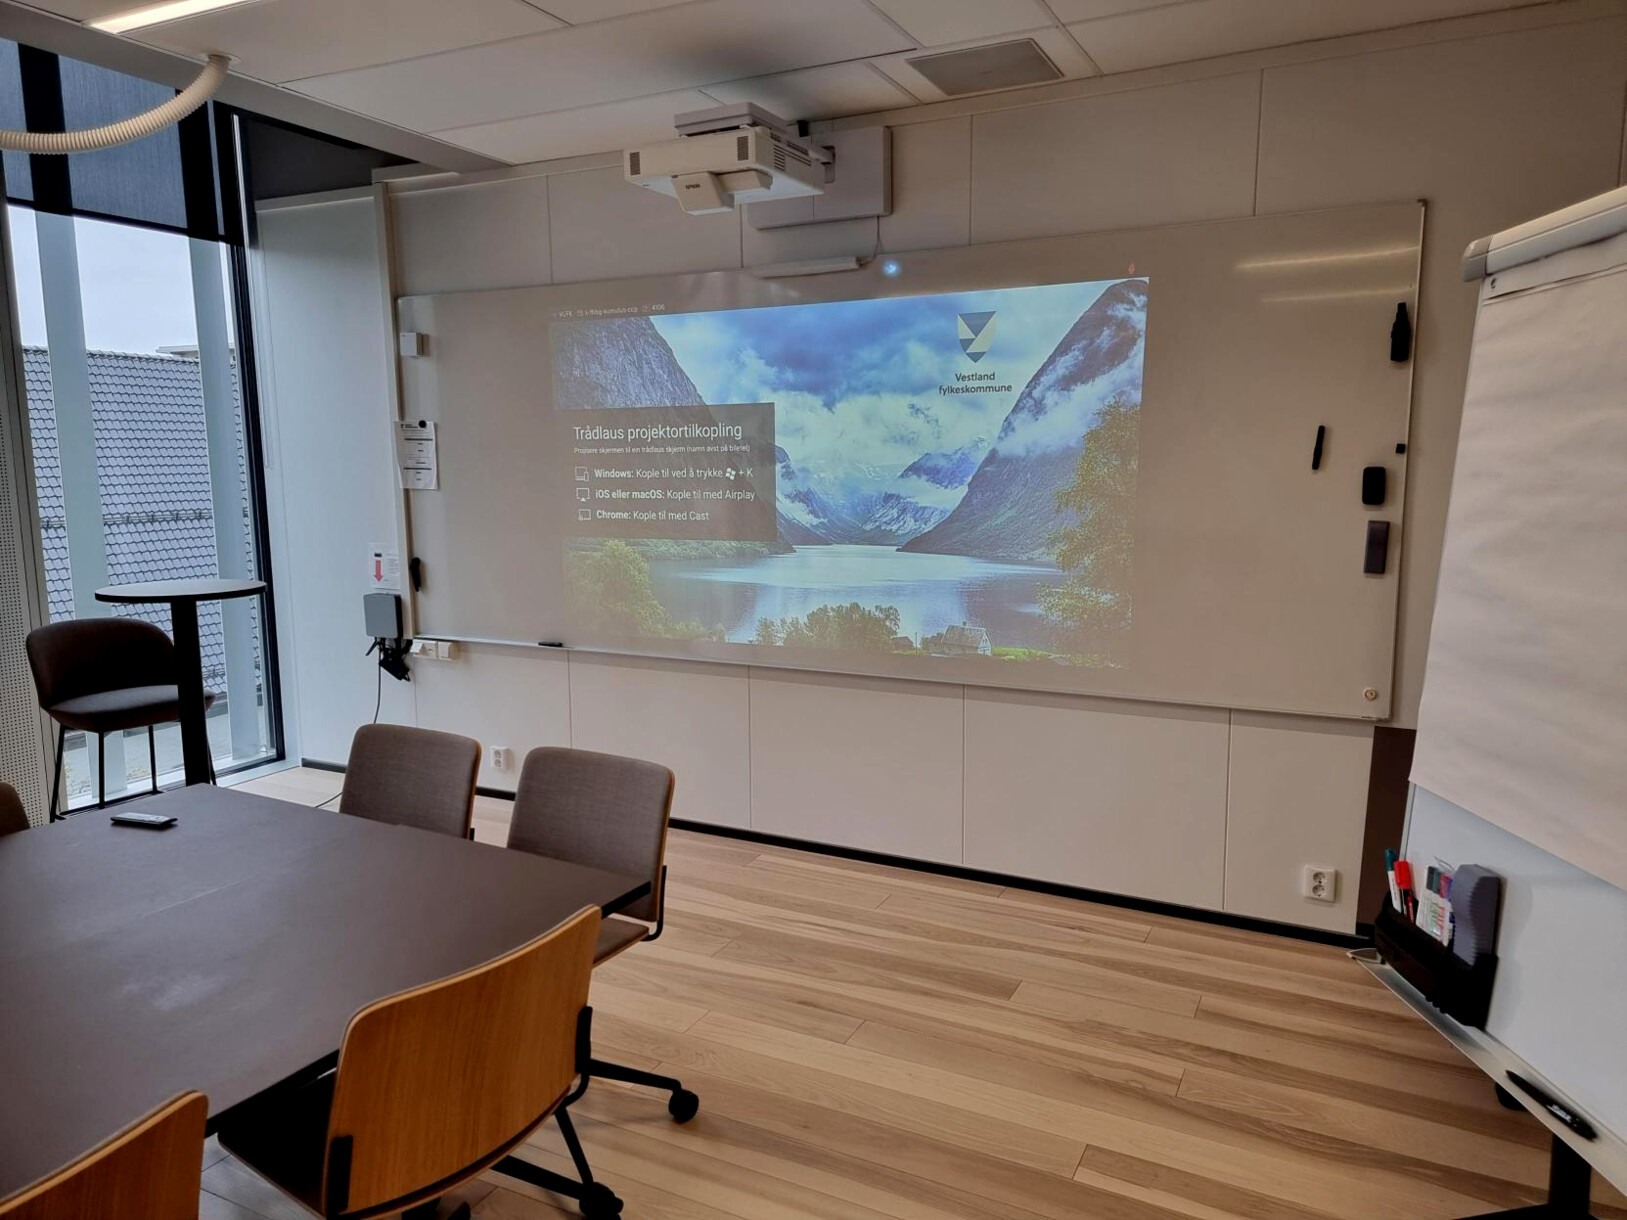 このハイブリッド学習教室ではMicrosoft Teamsを利用して、リモートでの授業参加者も、 教室内の学生と同様に会話に参加できます。